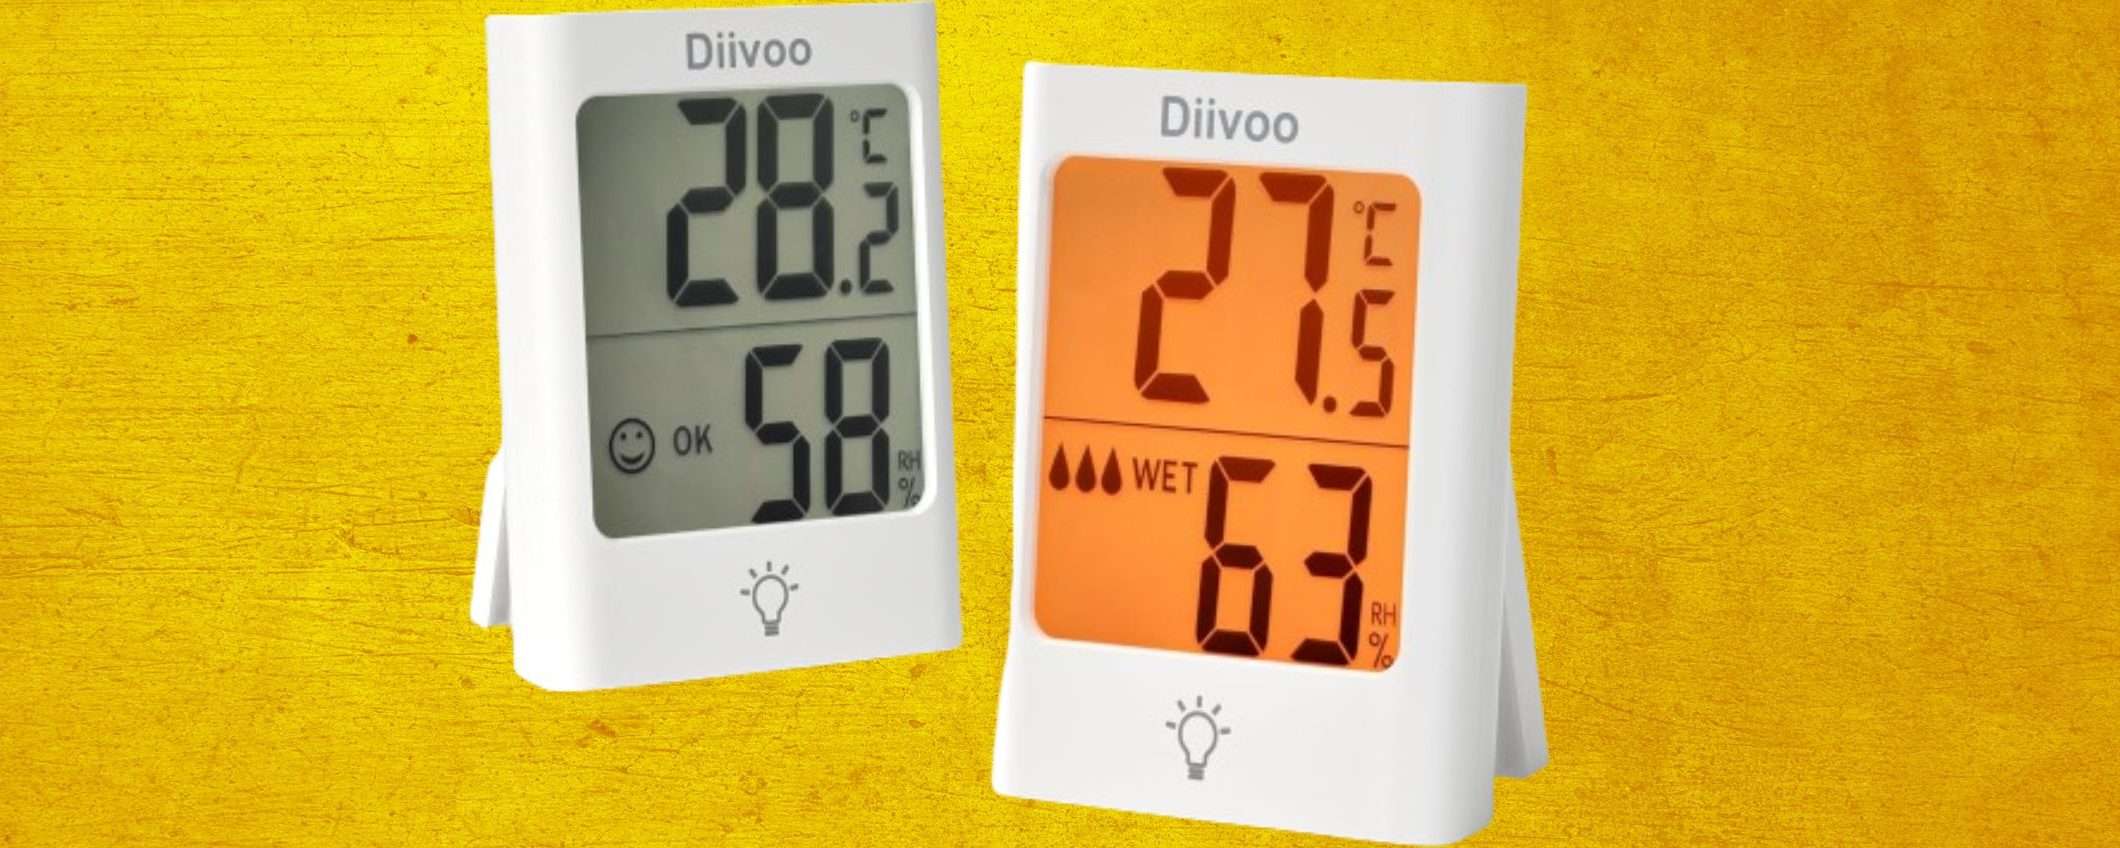 Termometro igrometro digitale a prezzo SHOCK su Amazon col TRUCCHETTO (3,50€)